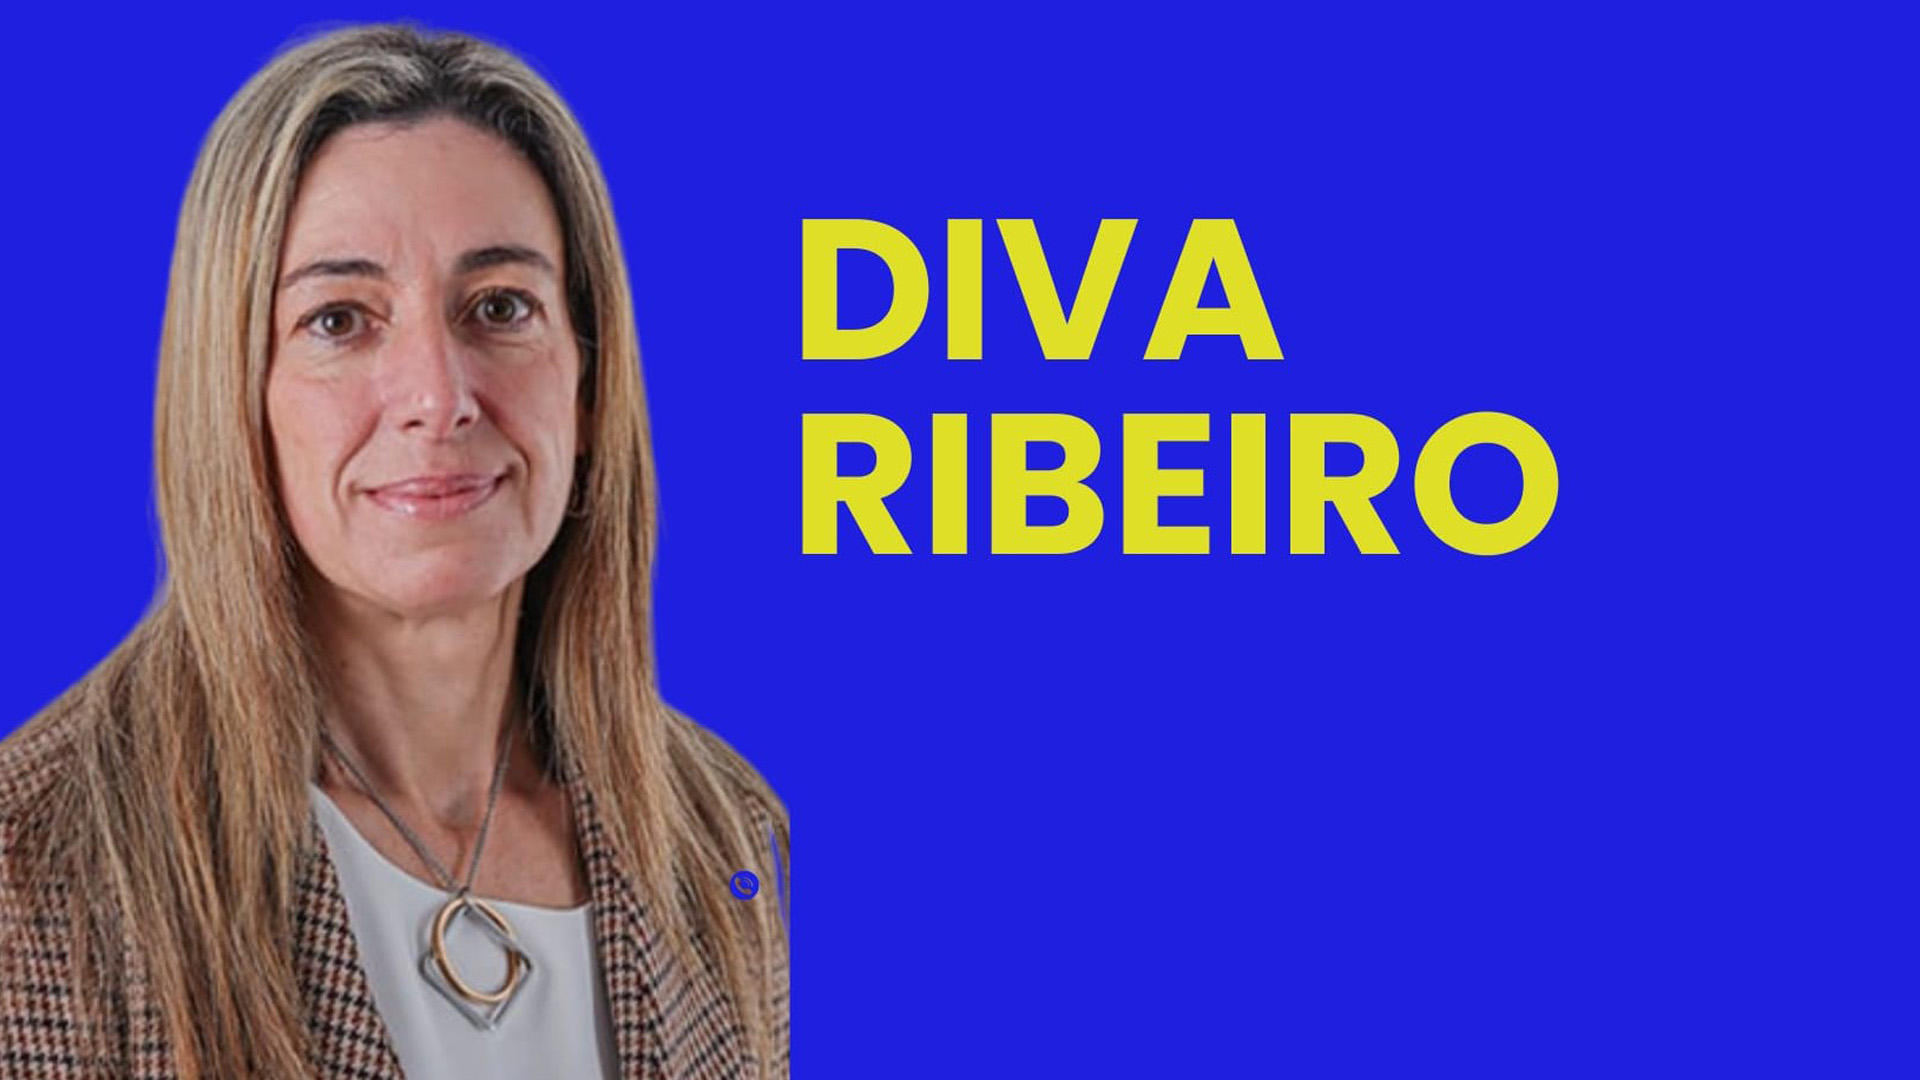 Diva Ribeiro promete ser a “voz” da região no parlamento